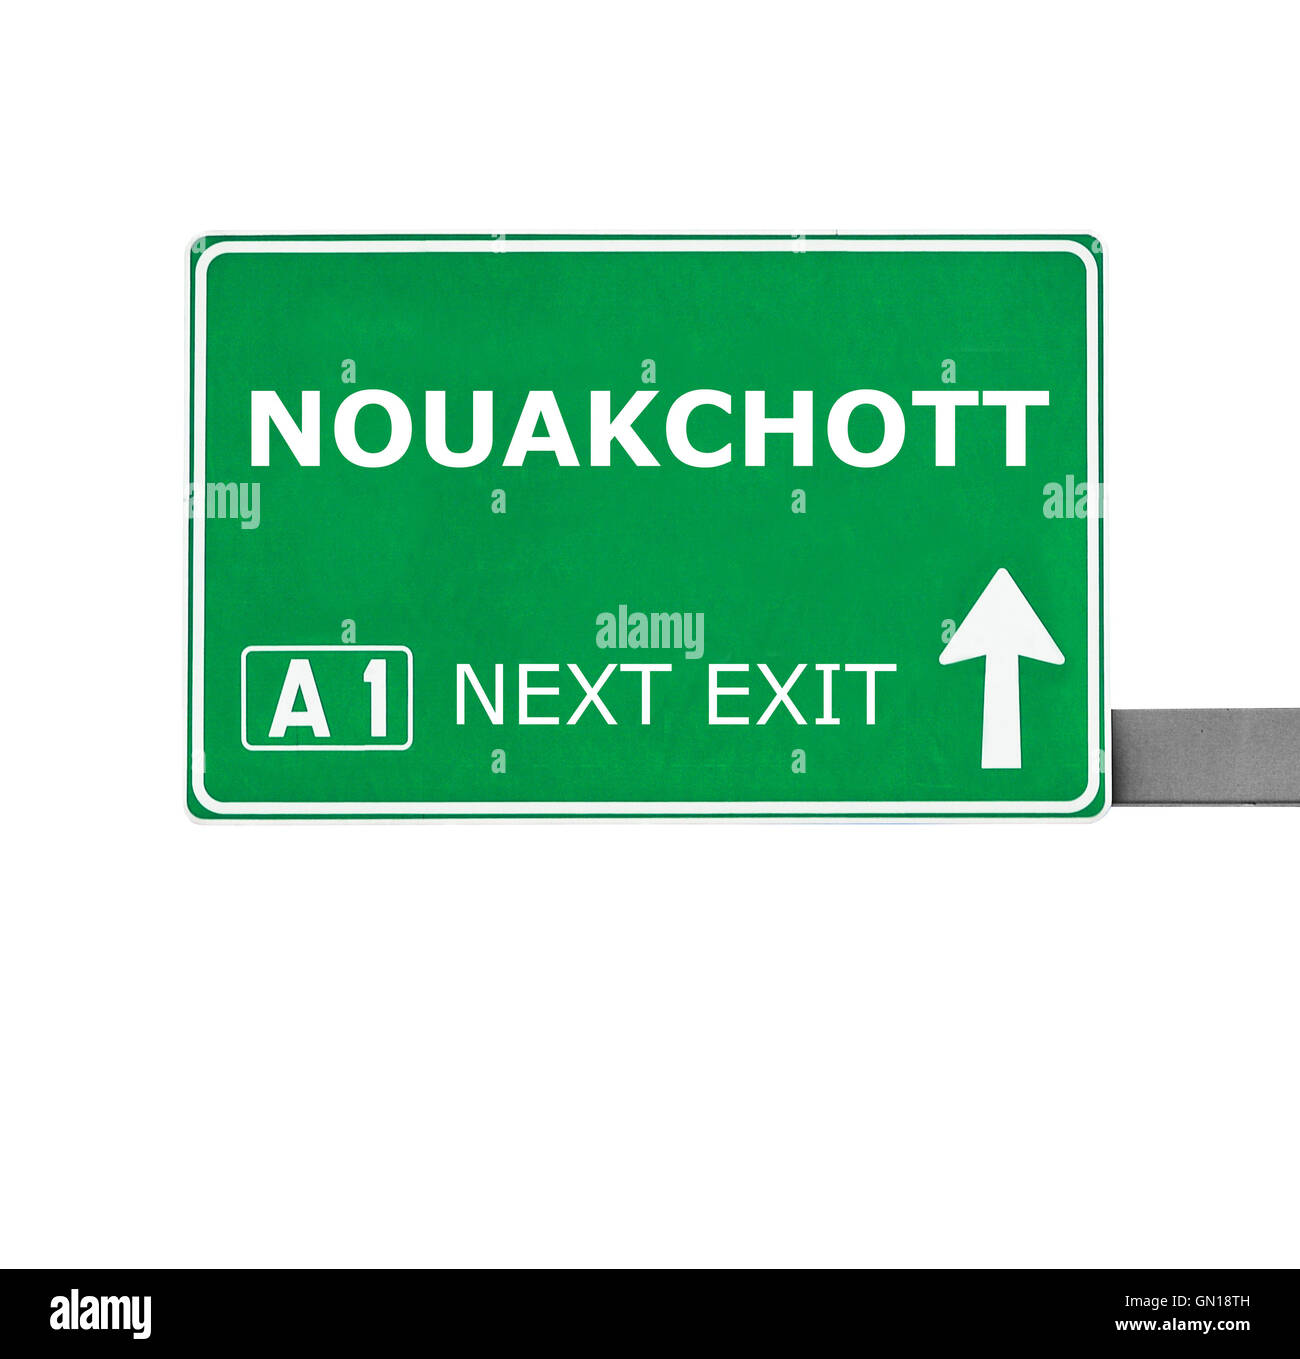 NOUAKCHOTT road sign isolated on white Stock Photo